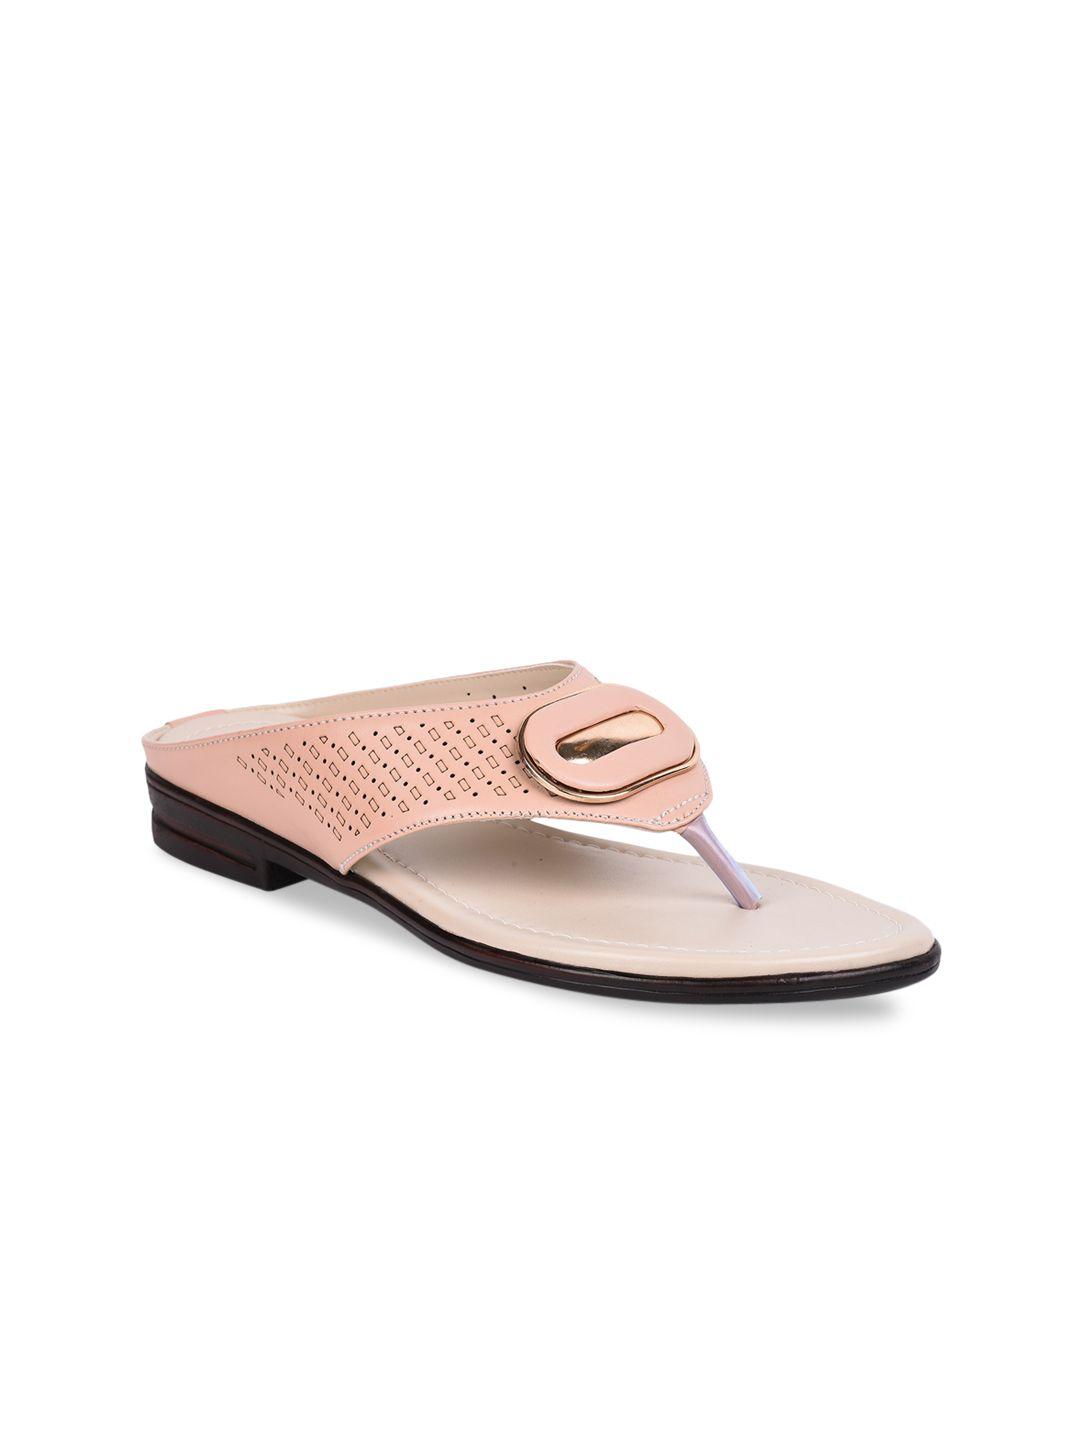 liberty-pink-slim-embellished-sandals